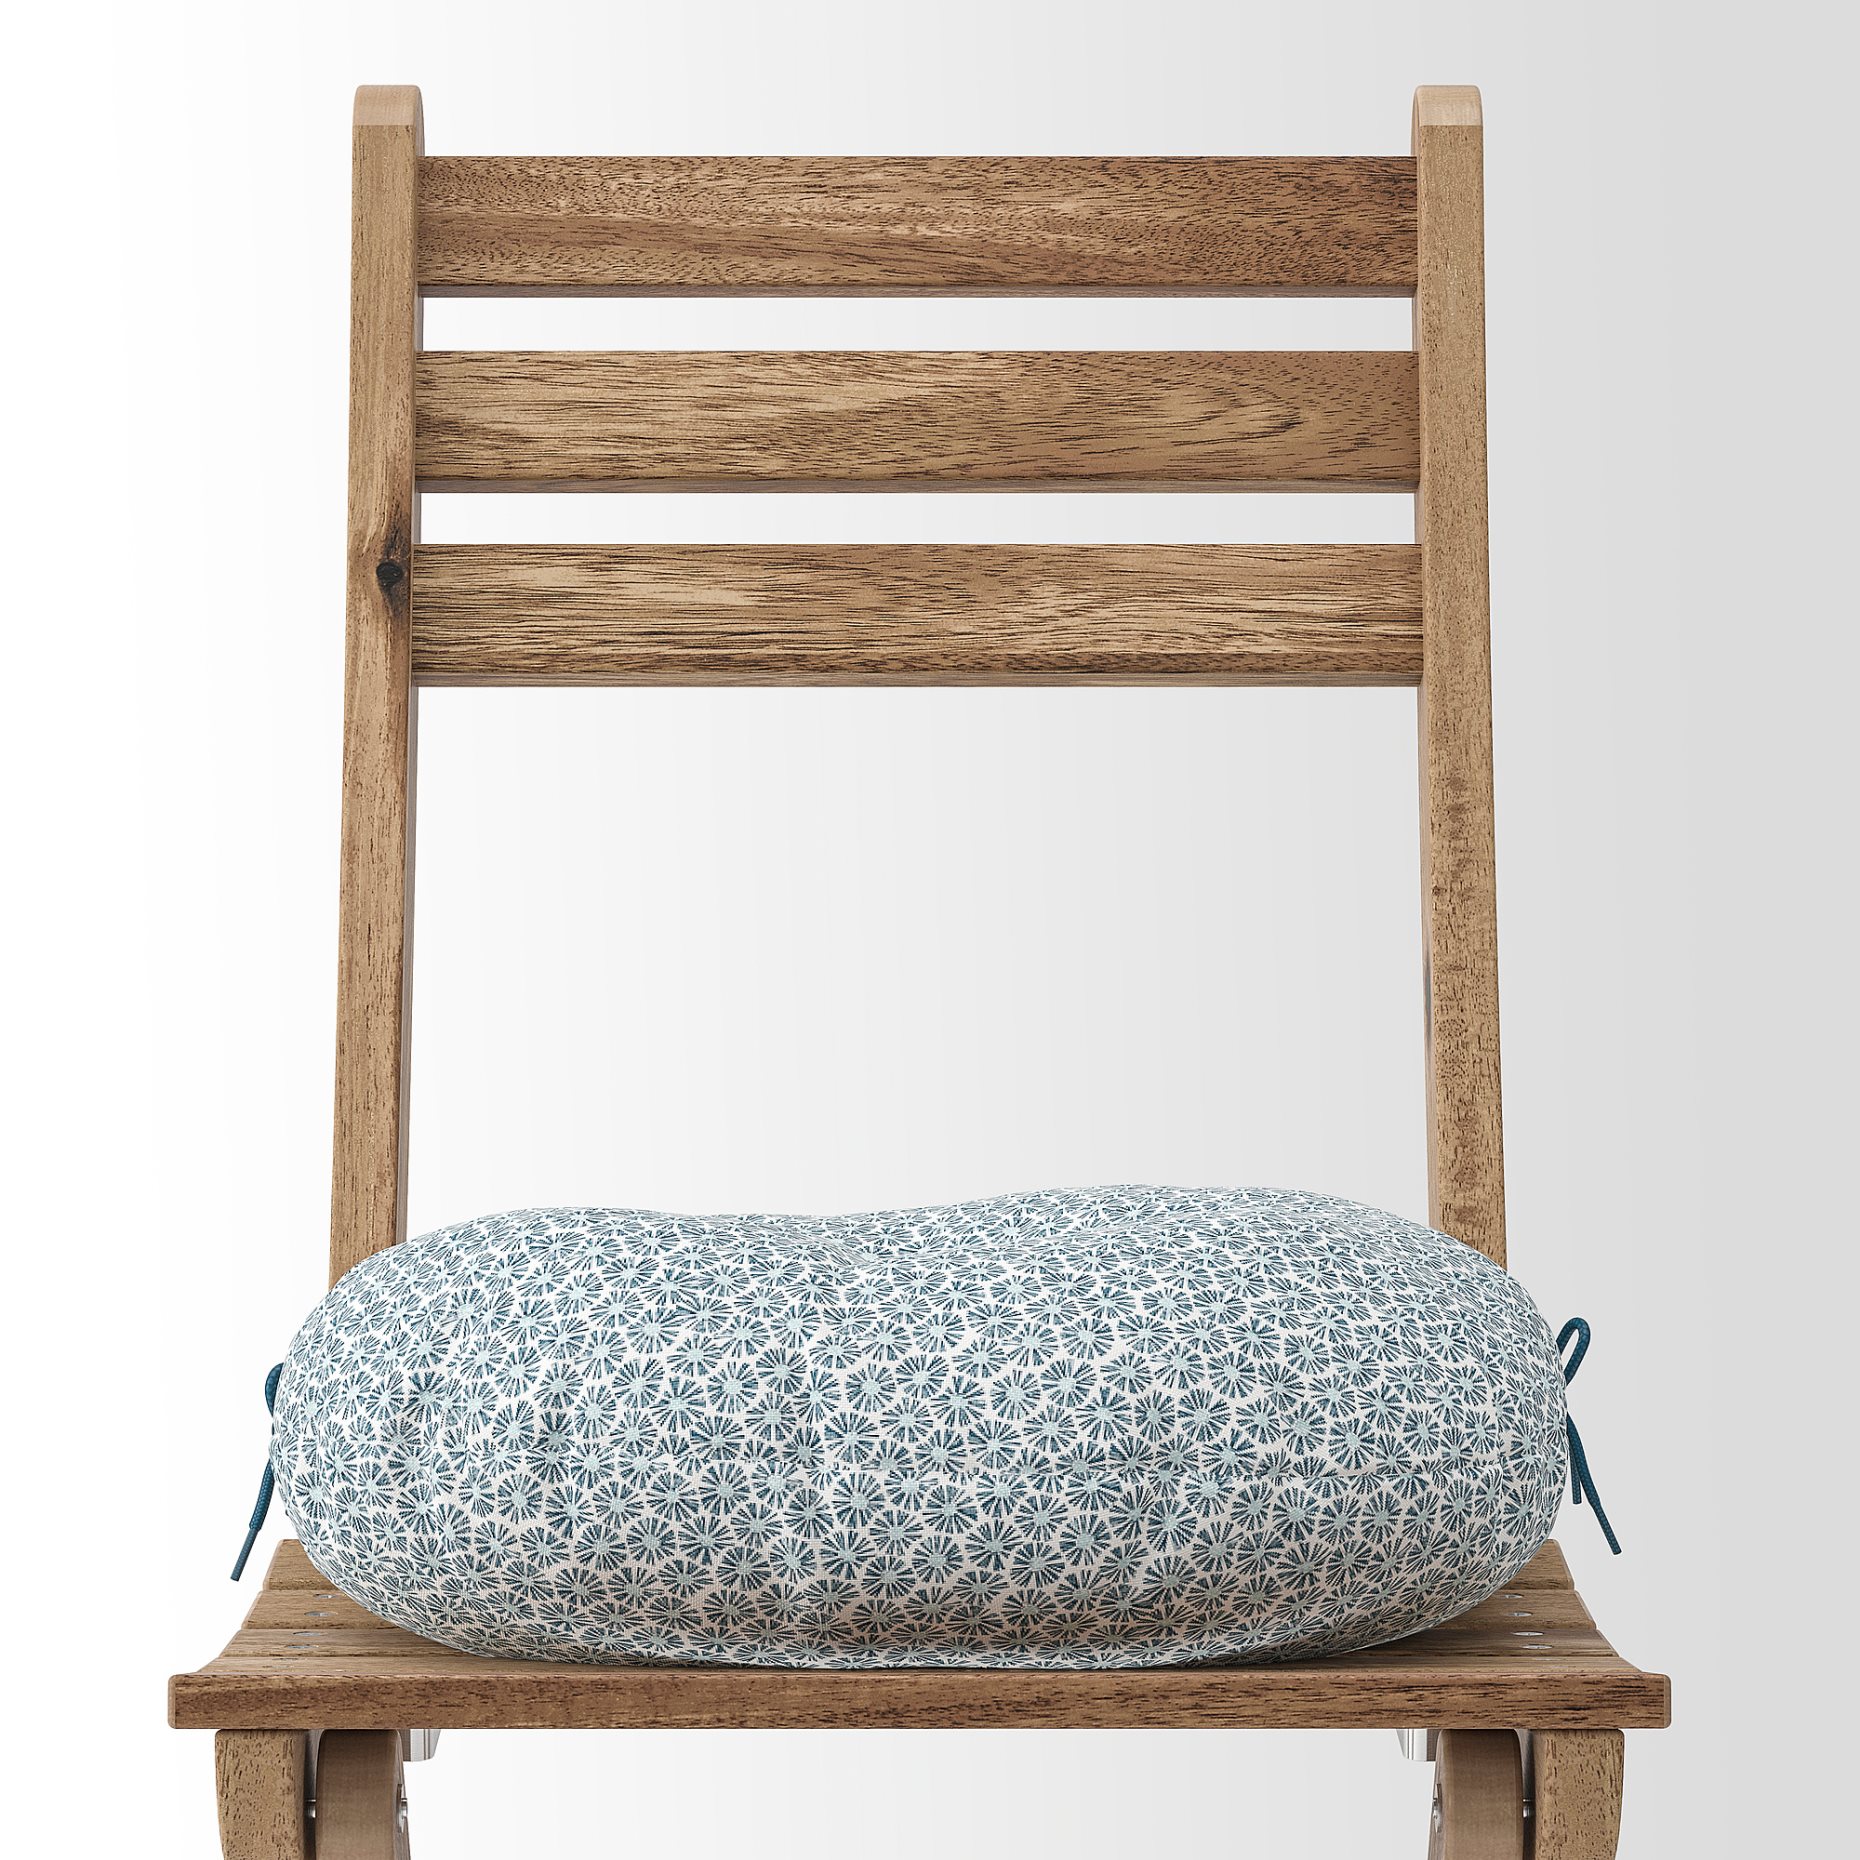 KLÖSAN, chair cushion outdoor, 35 cm, 205.099.45